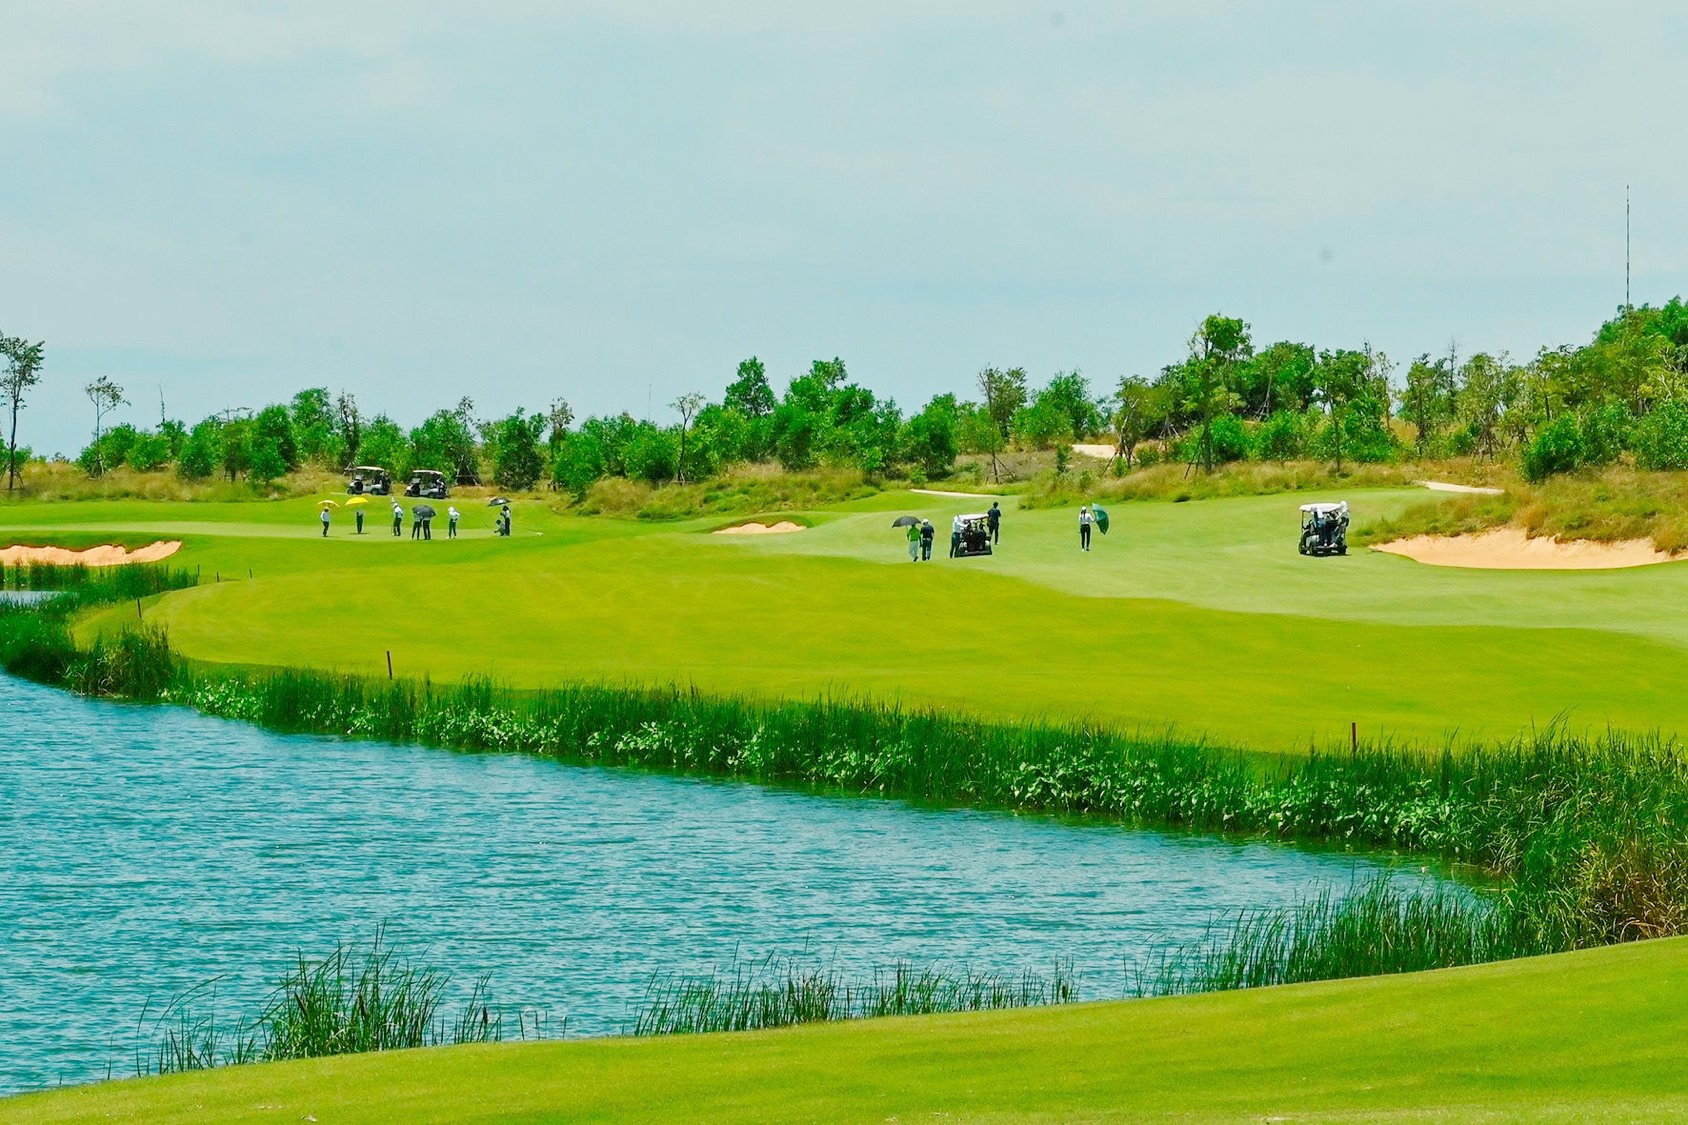 Cụm sân golf 36 hố chuẩn PGA độc quyền là một trong 200 tiện ích của đô thị du lịch NovaWorld Phan Thiet.  - pic_2 - Nhận diện bất động sản du lịch tiềm năng